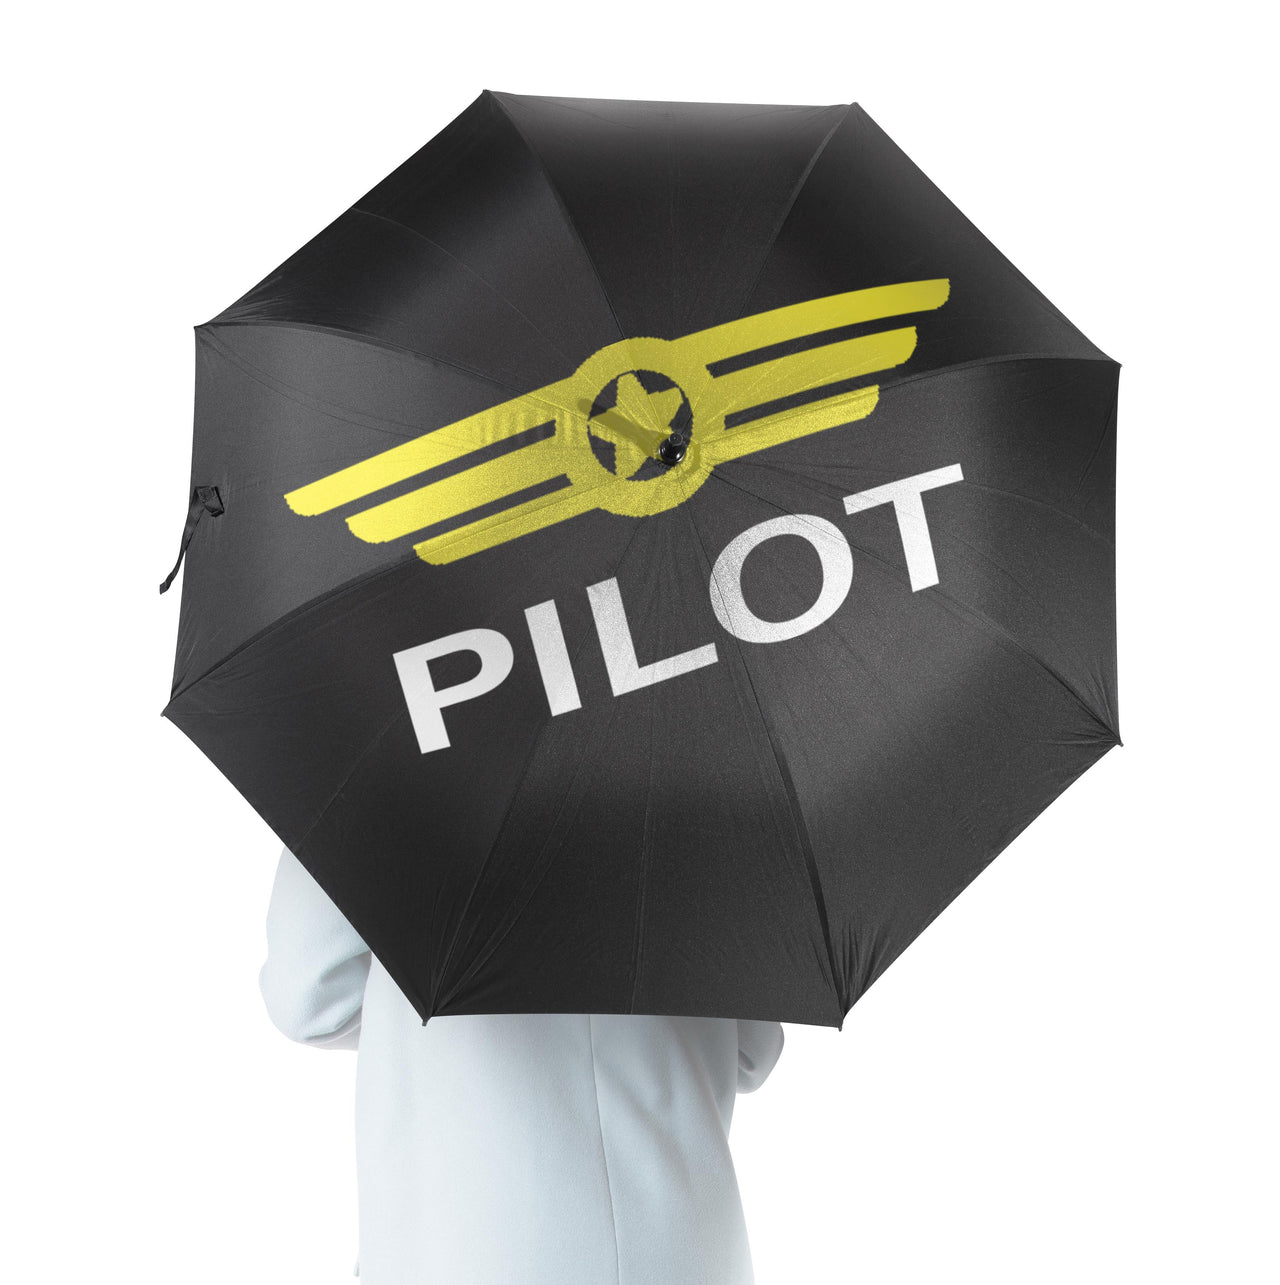 Pilot & Badge Black Designed Umbrella